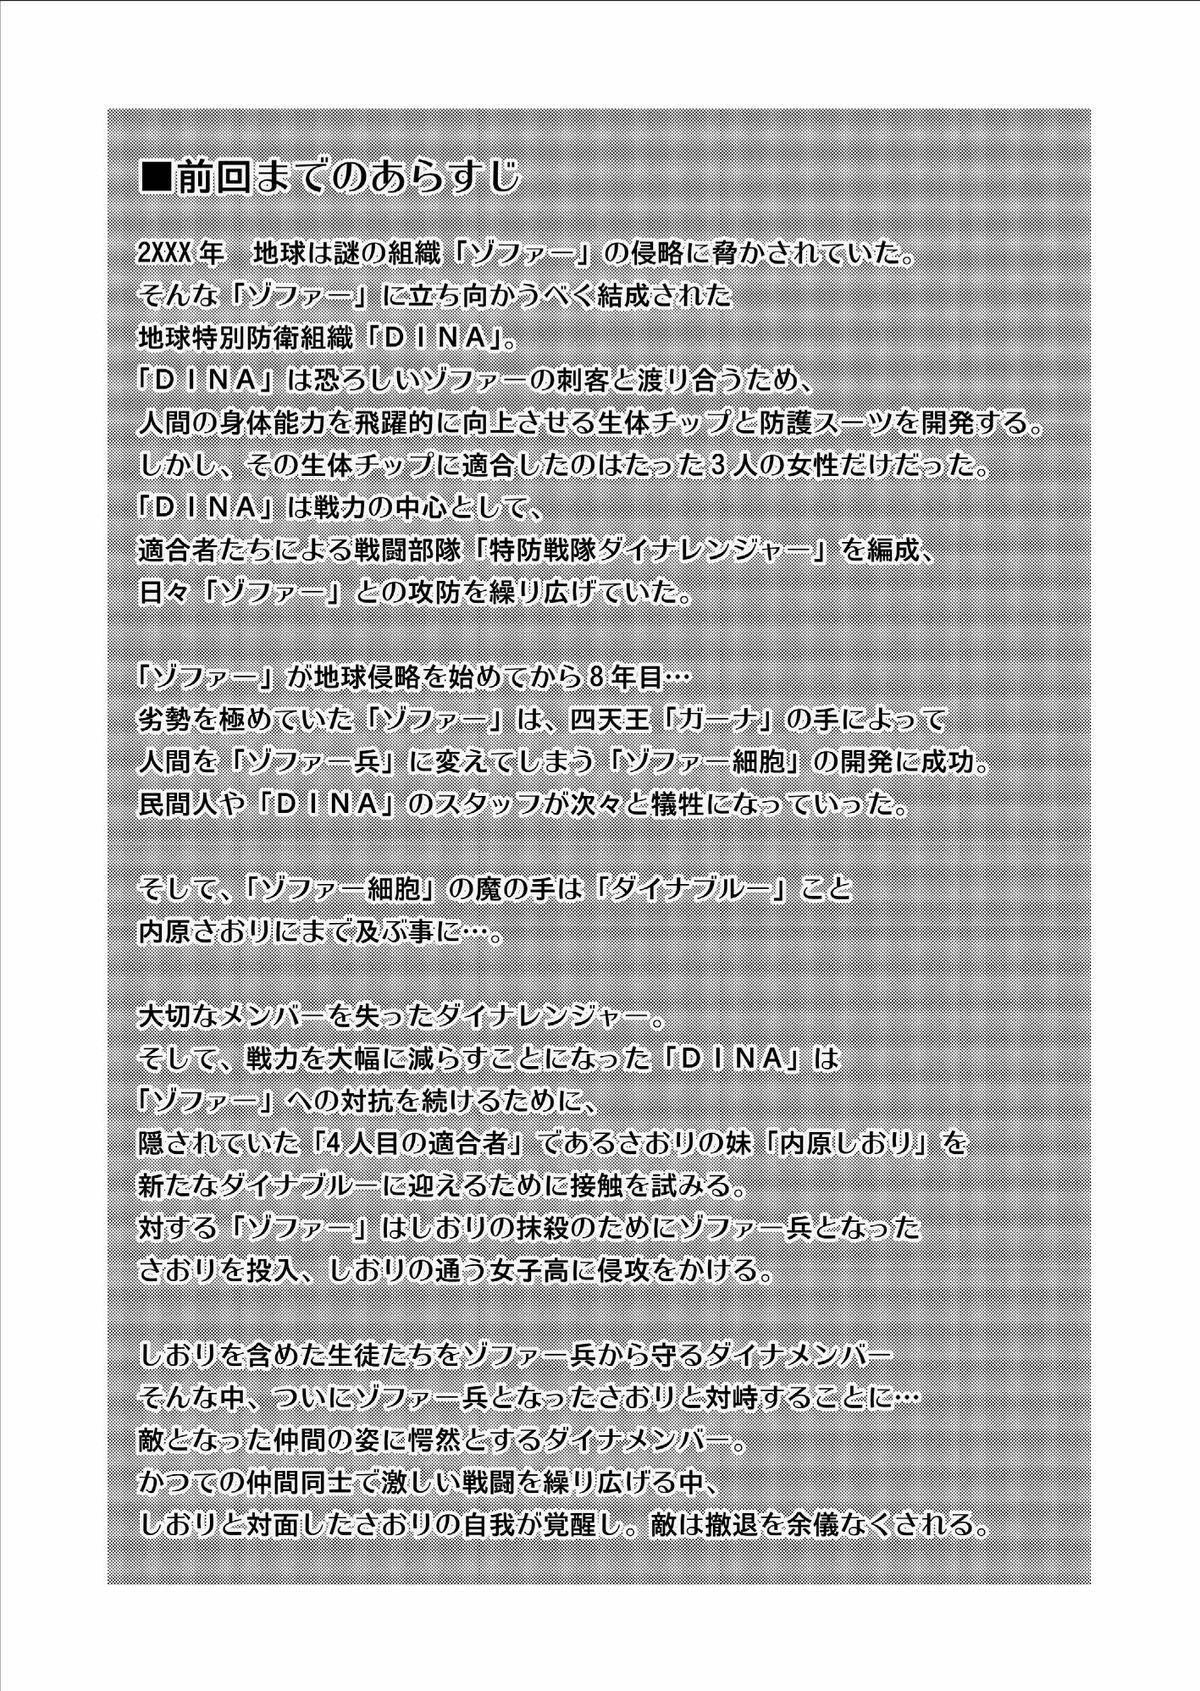 [Macxe's] Dinaranger Vol. 9-11 [English][SaHa] page 2 full